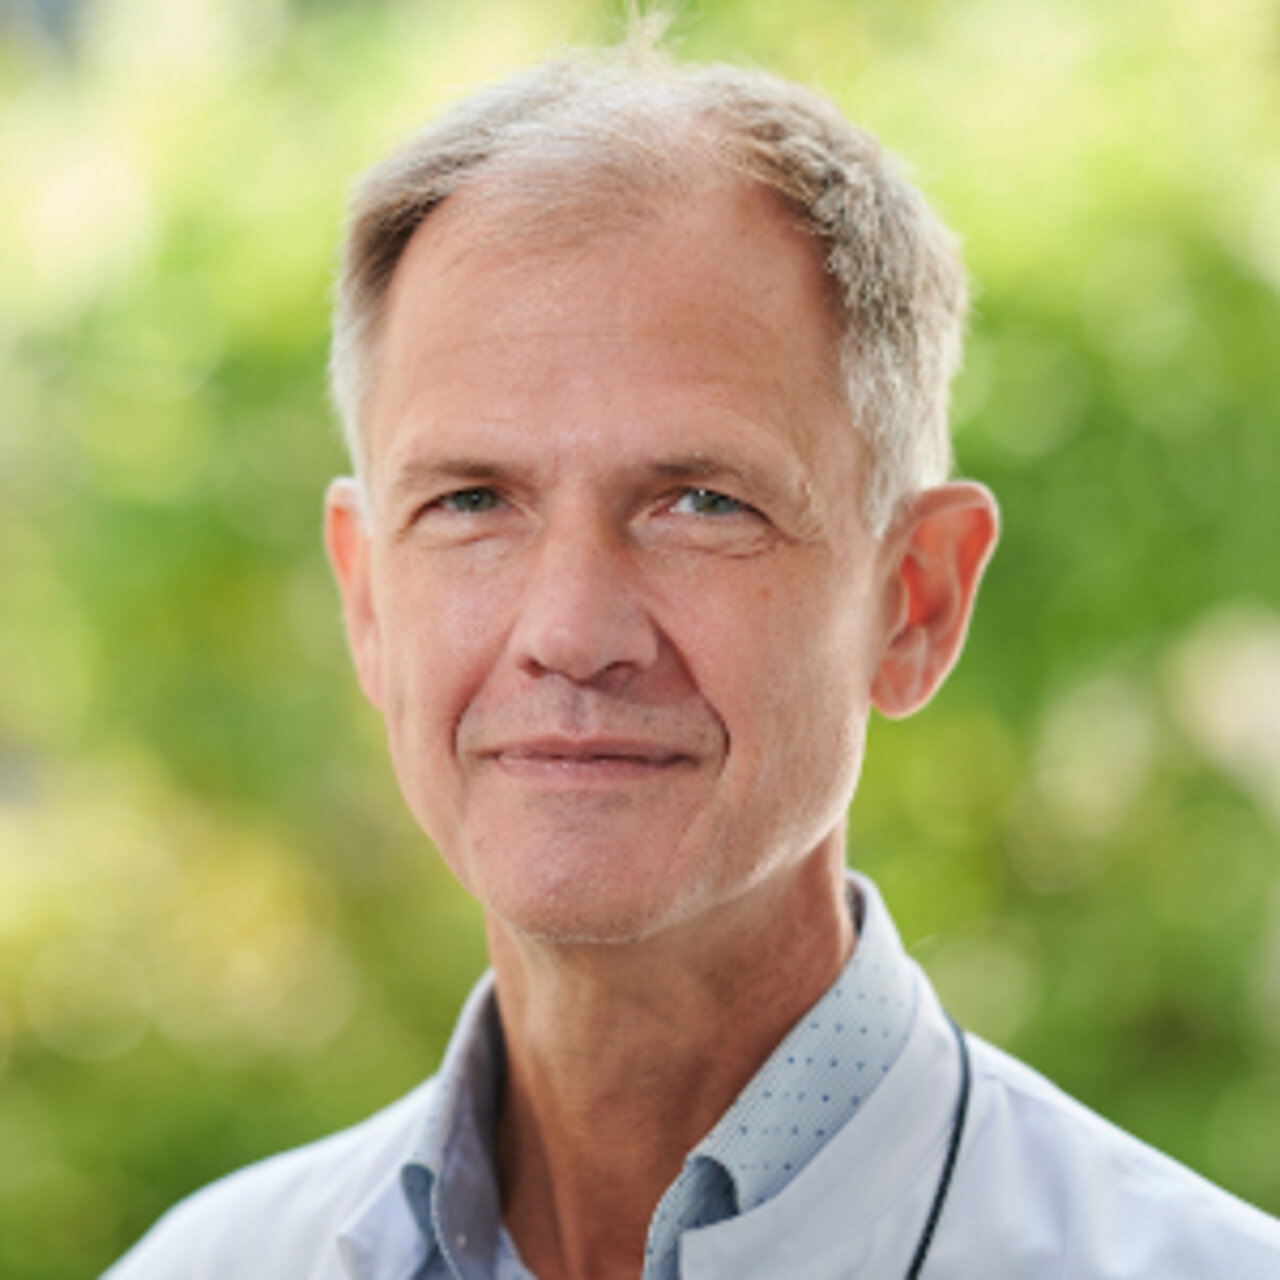 Univ.-Prof. Dr. med. Andreas Rink -  Spezialist für minimalinvasive onkologische Chirurgie - Portrait